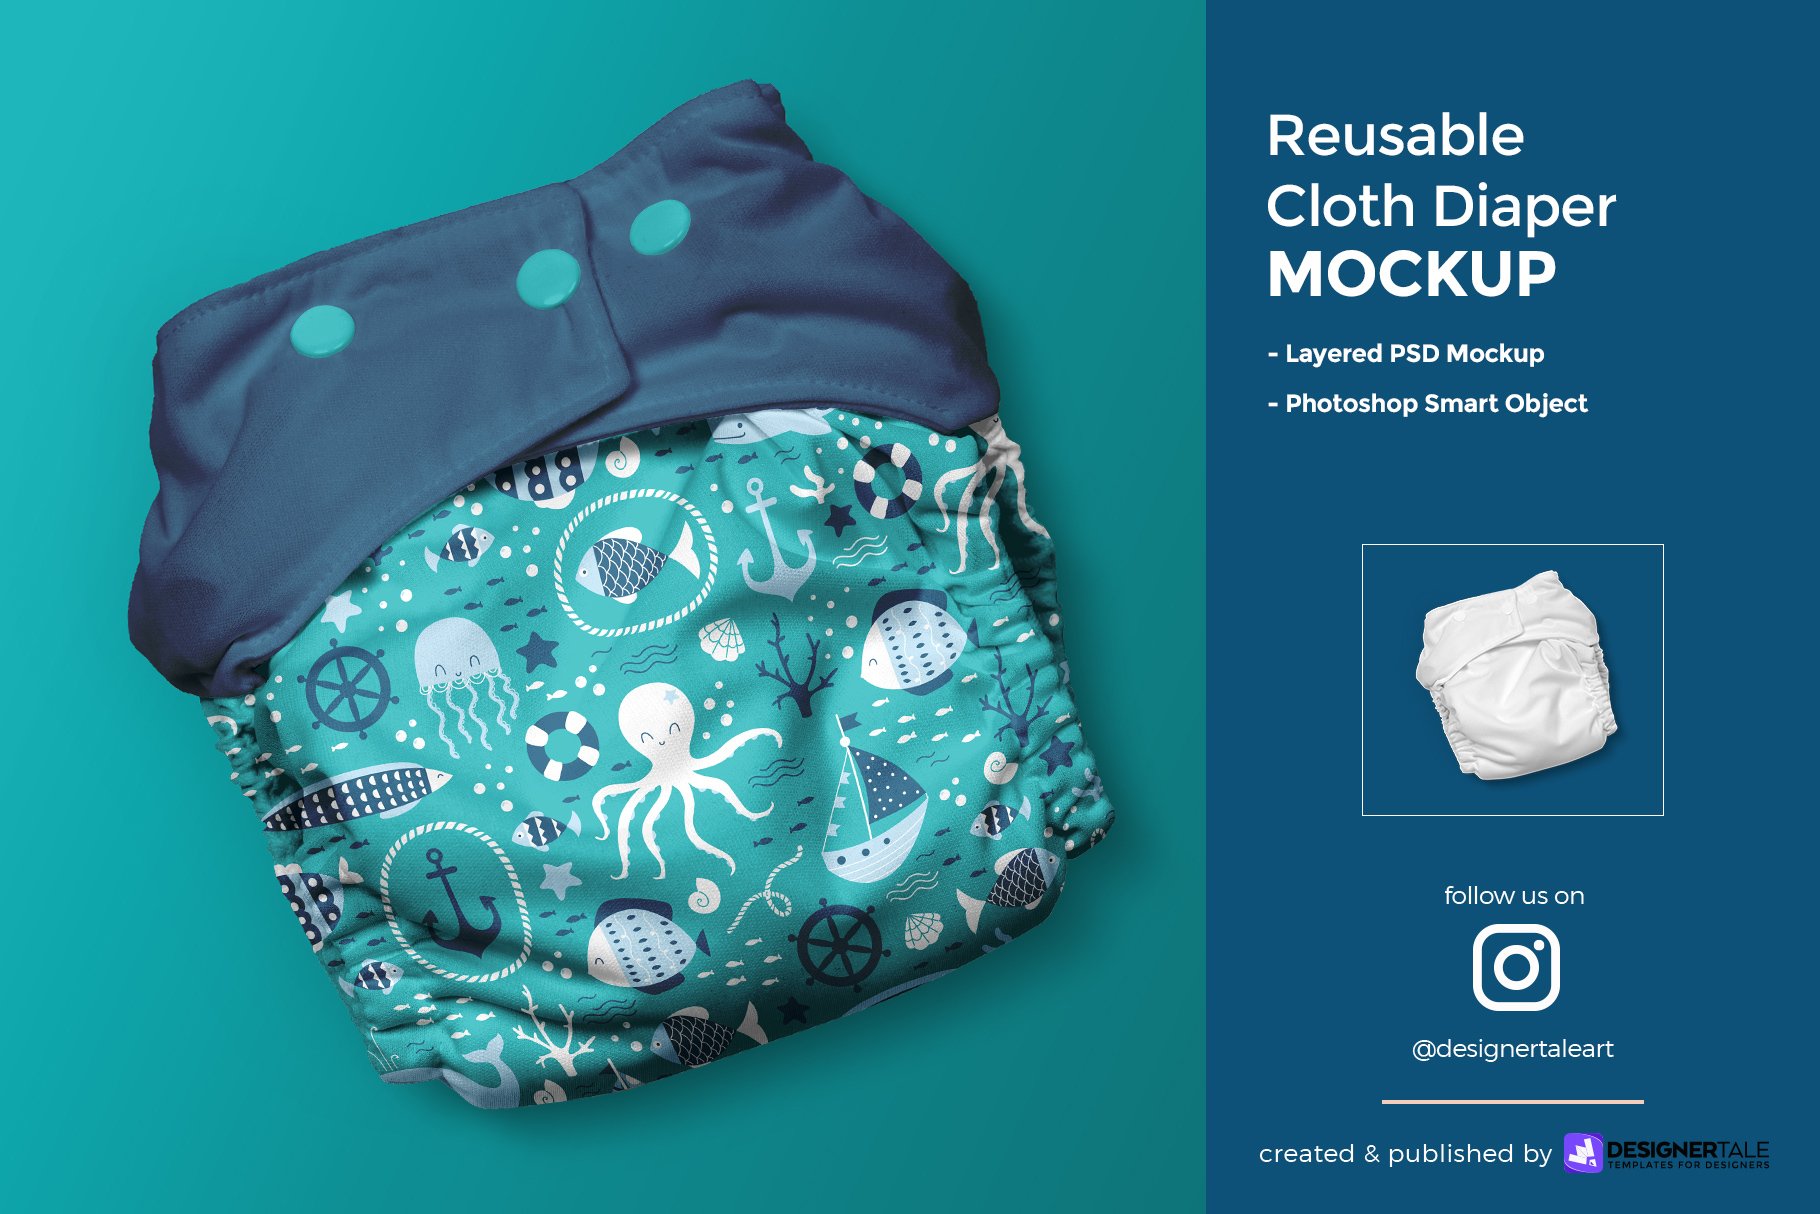 Reusable Cloth Diaper Mockup